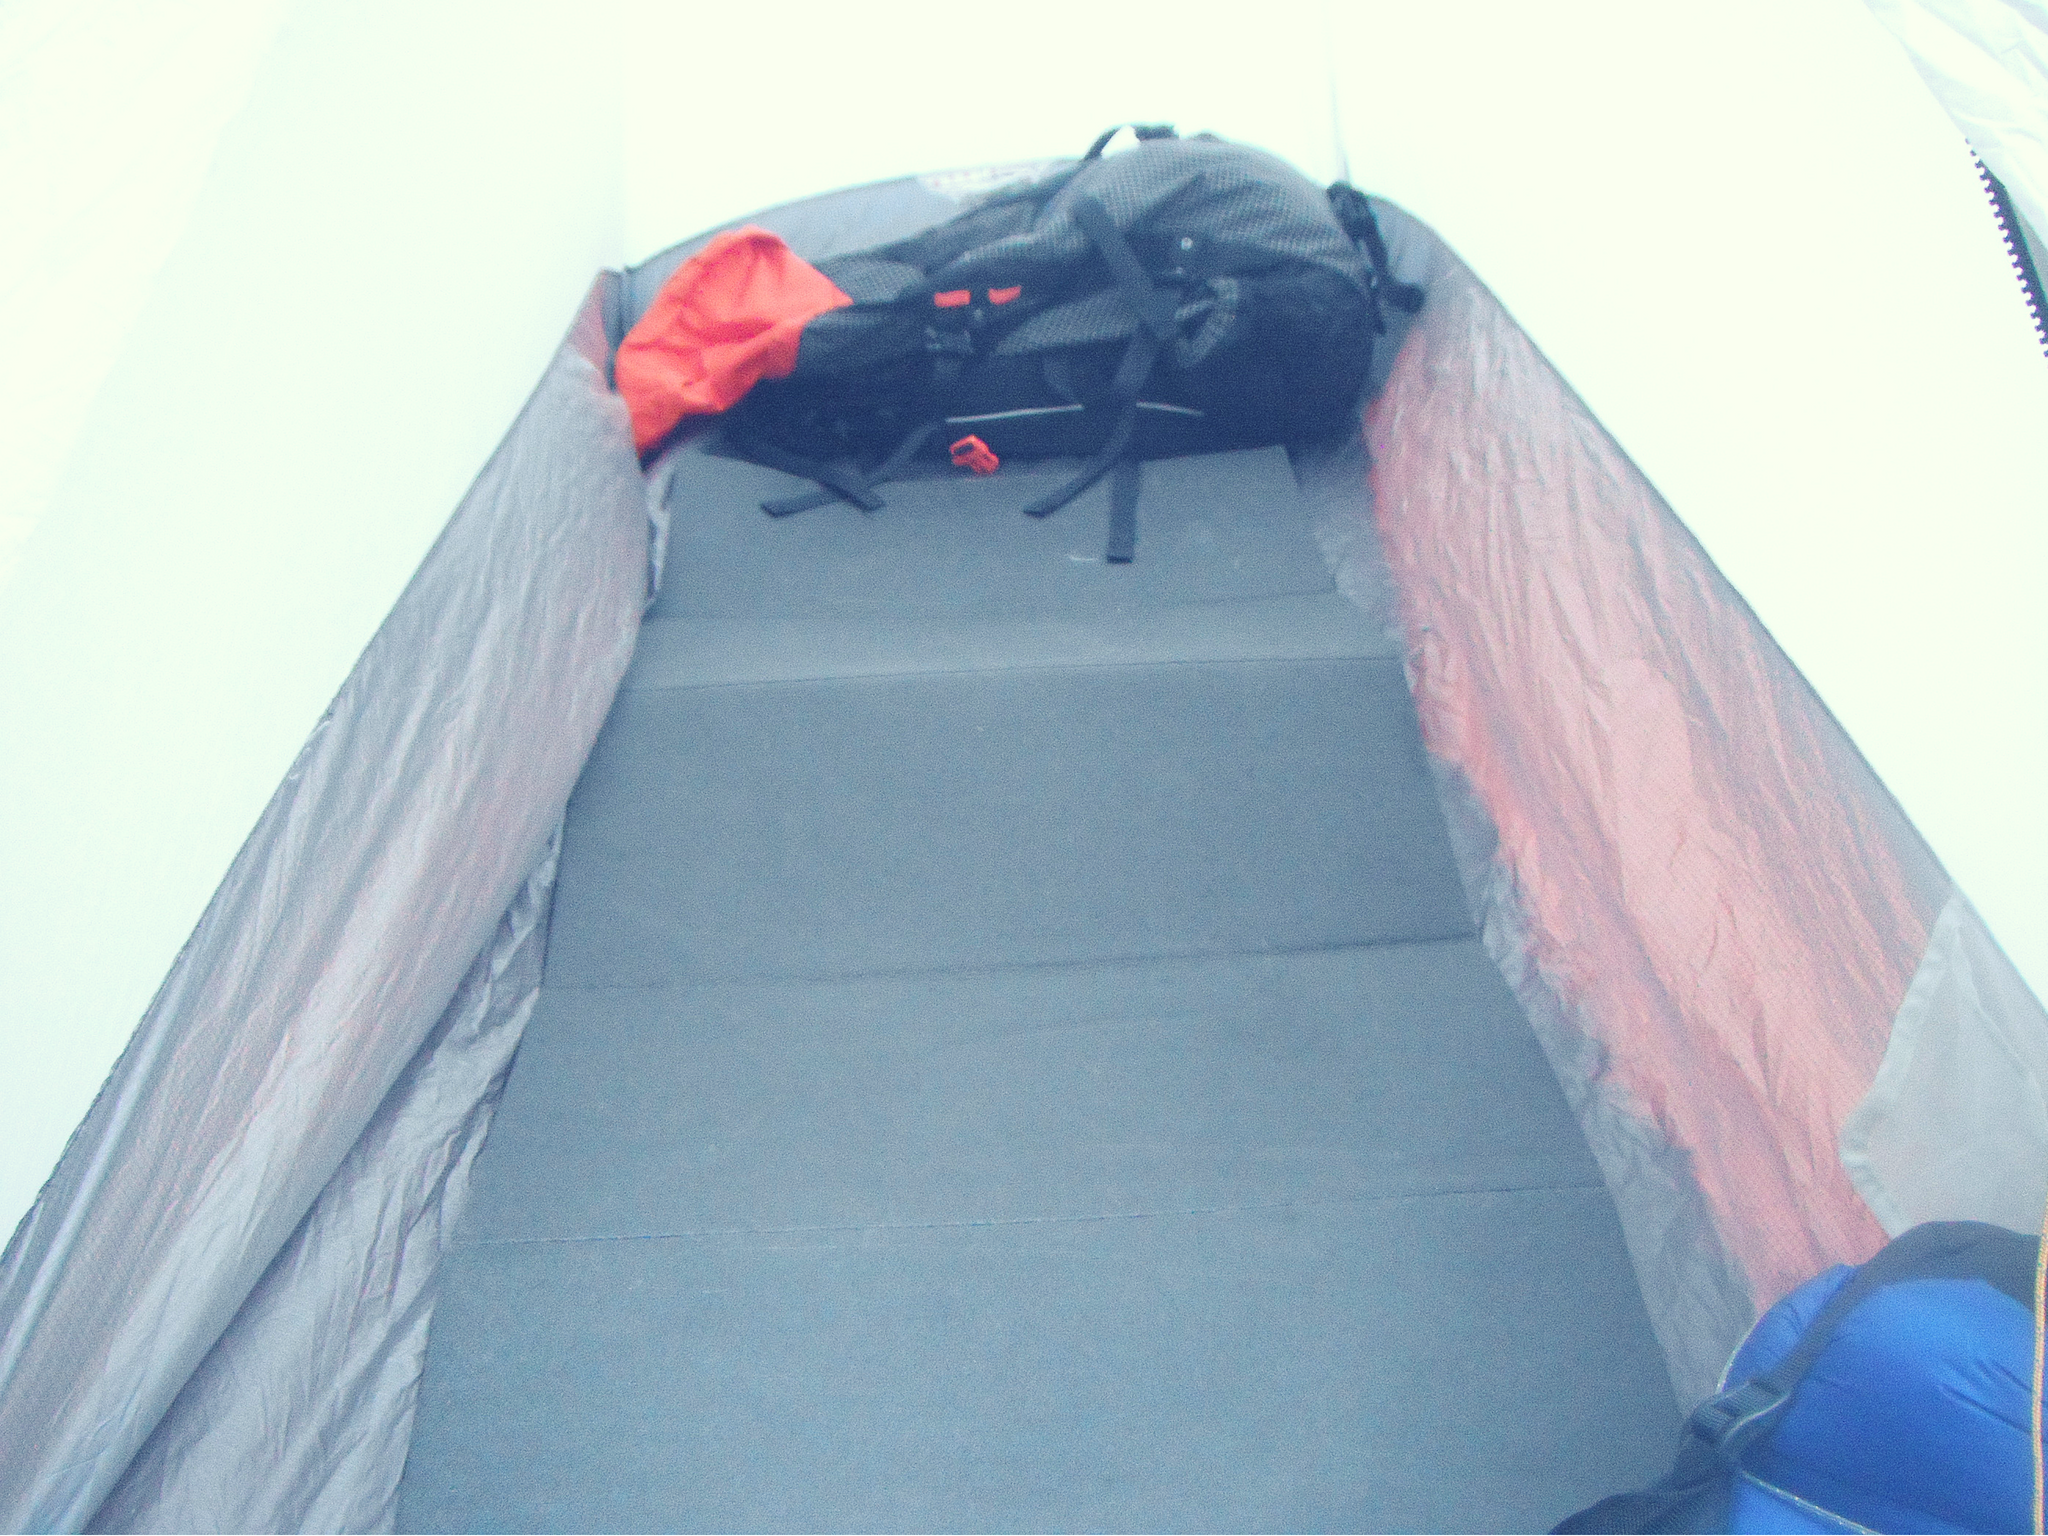 ソロキャンプ用のテント mont-bell(モンベル) ステラリッジテント1型 レビュー | ひとりキャンプと山道具